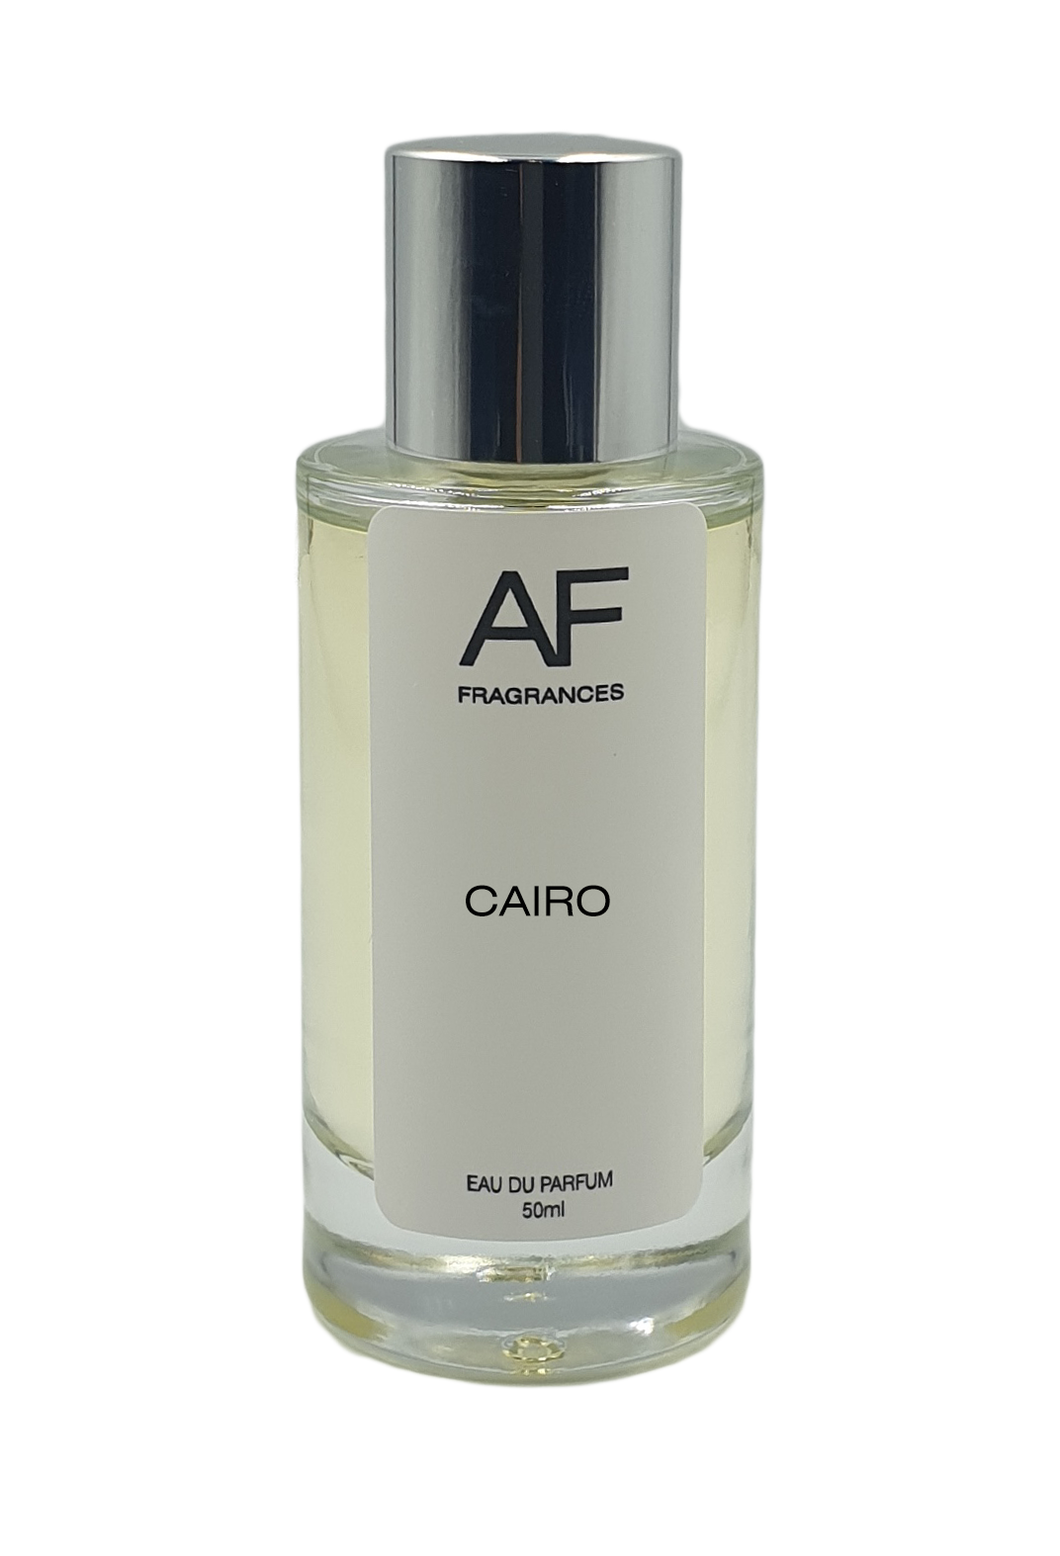 Cairo - AF Fragrances